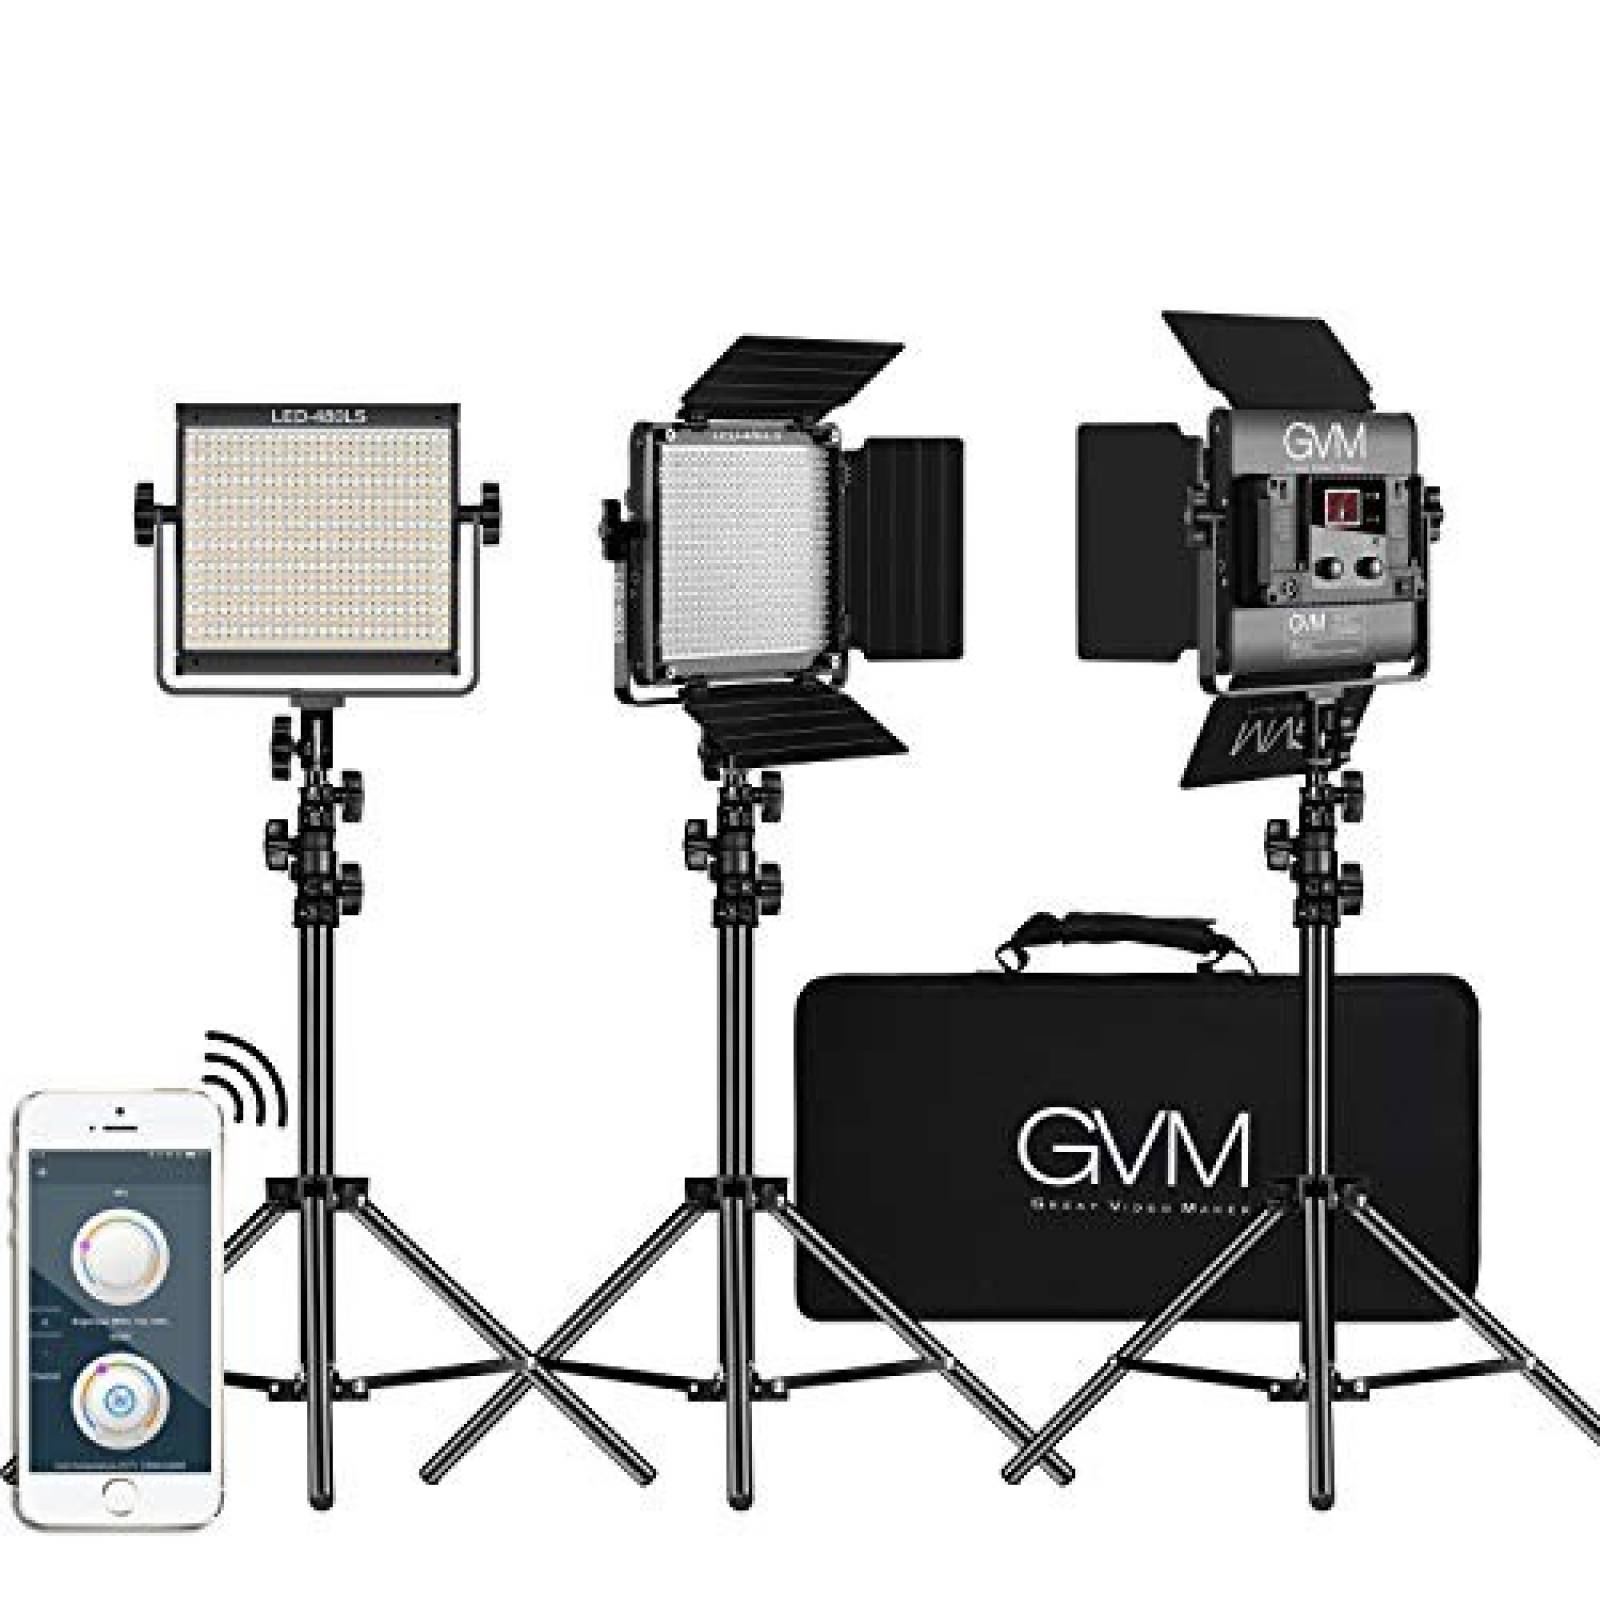 Kit de 3 luces de vídeo GVM Great Video Maker LED bicolor